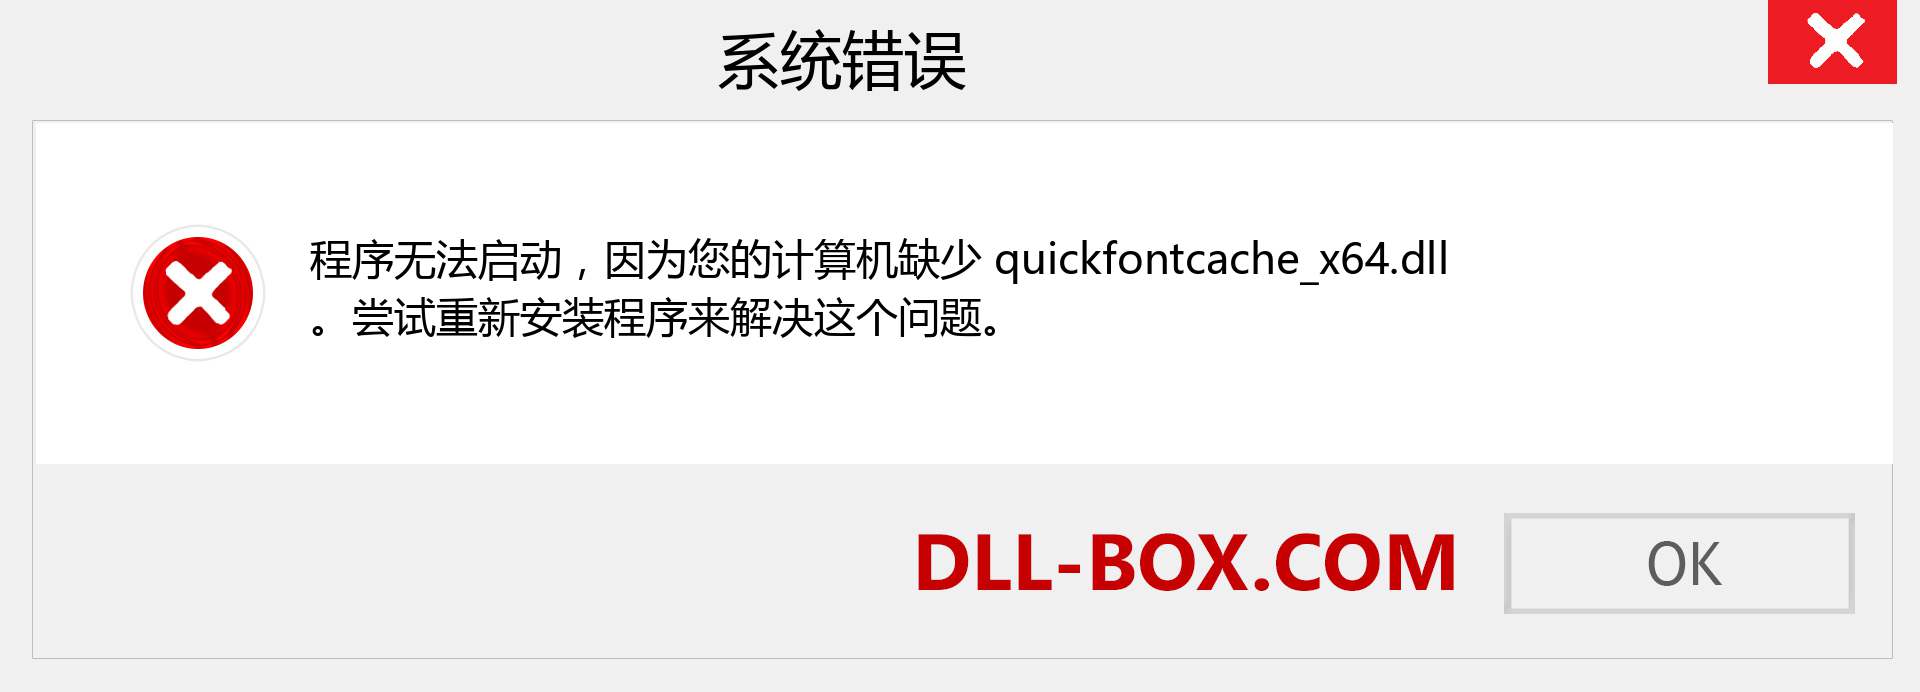 quickfontcache_x64.dll 文件丢失？。 适用于 Windows 7、8、10 的下载 - 修复 Windows、照片、图像上的 quickfontcache_x64 dll 丢失错误